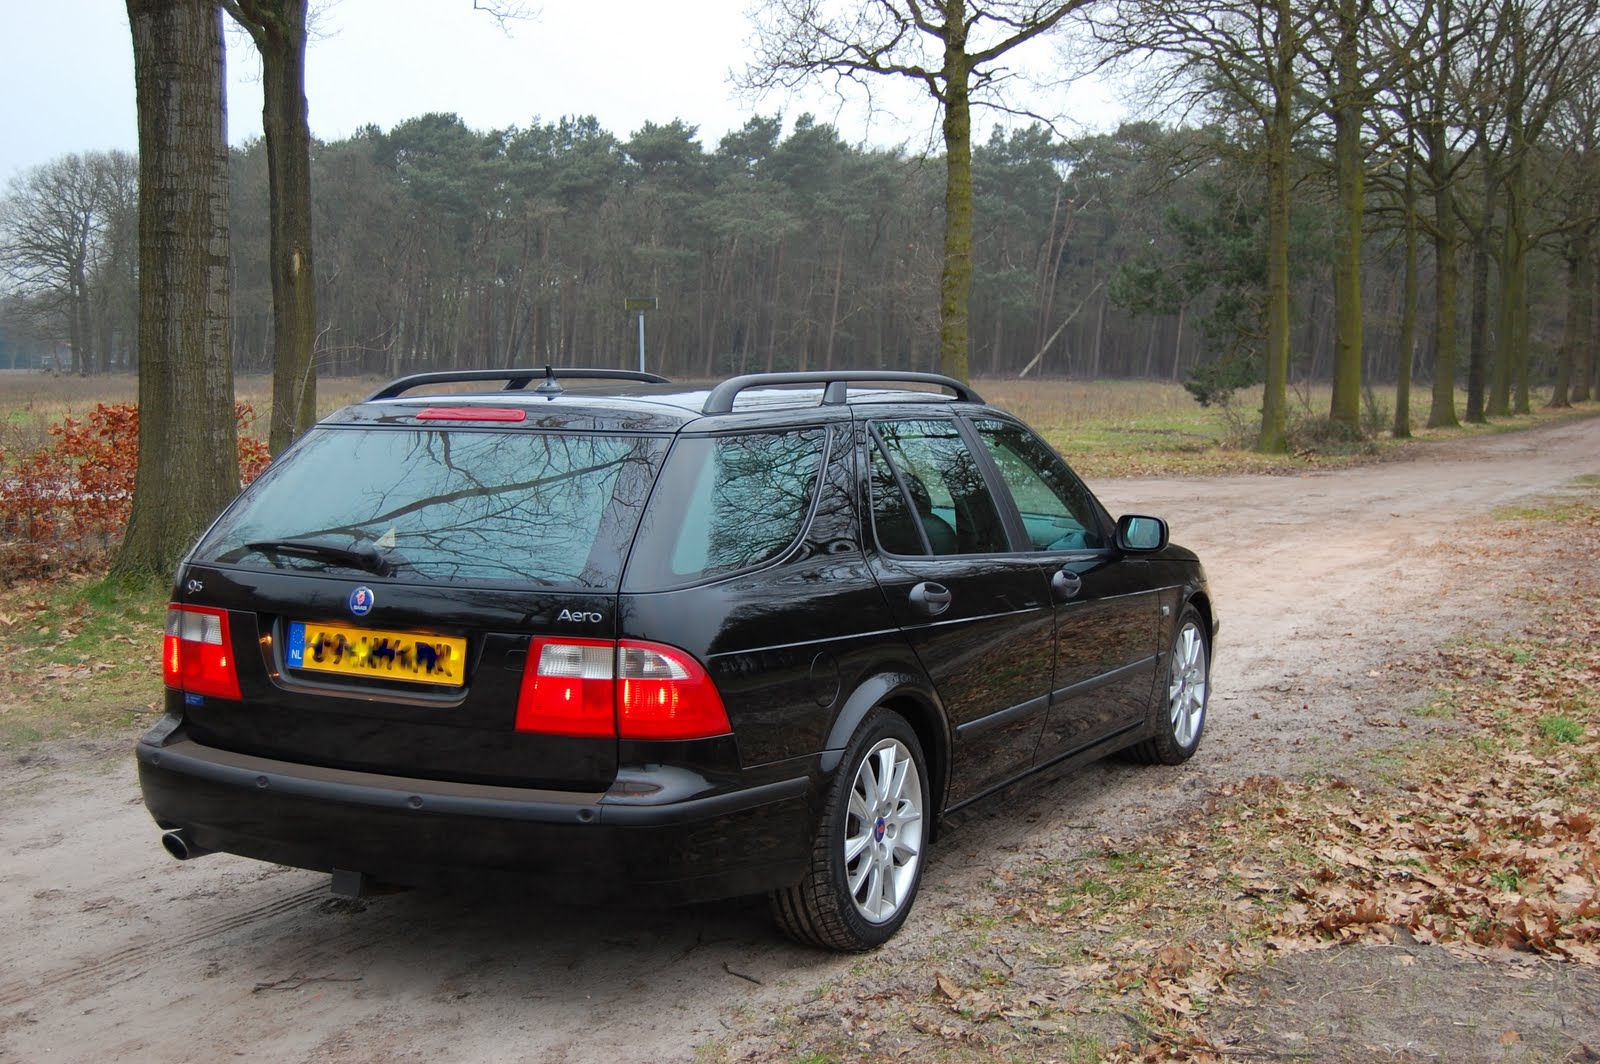 Saab Club Nederland - Modellen - Saab 9-5 (12)